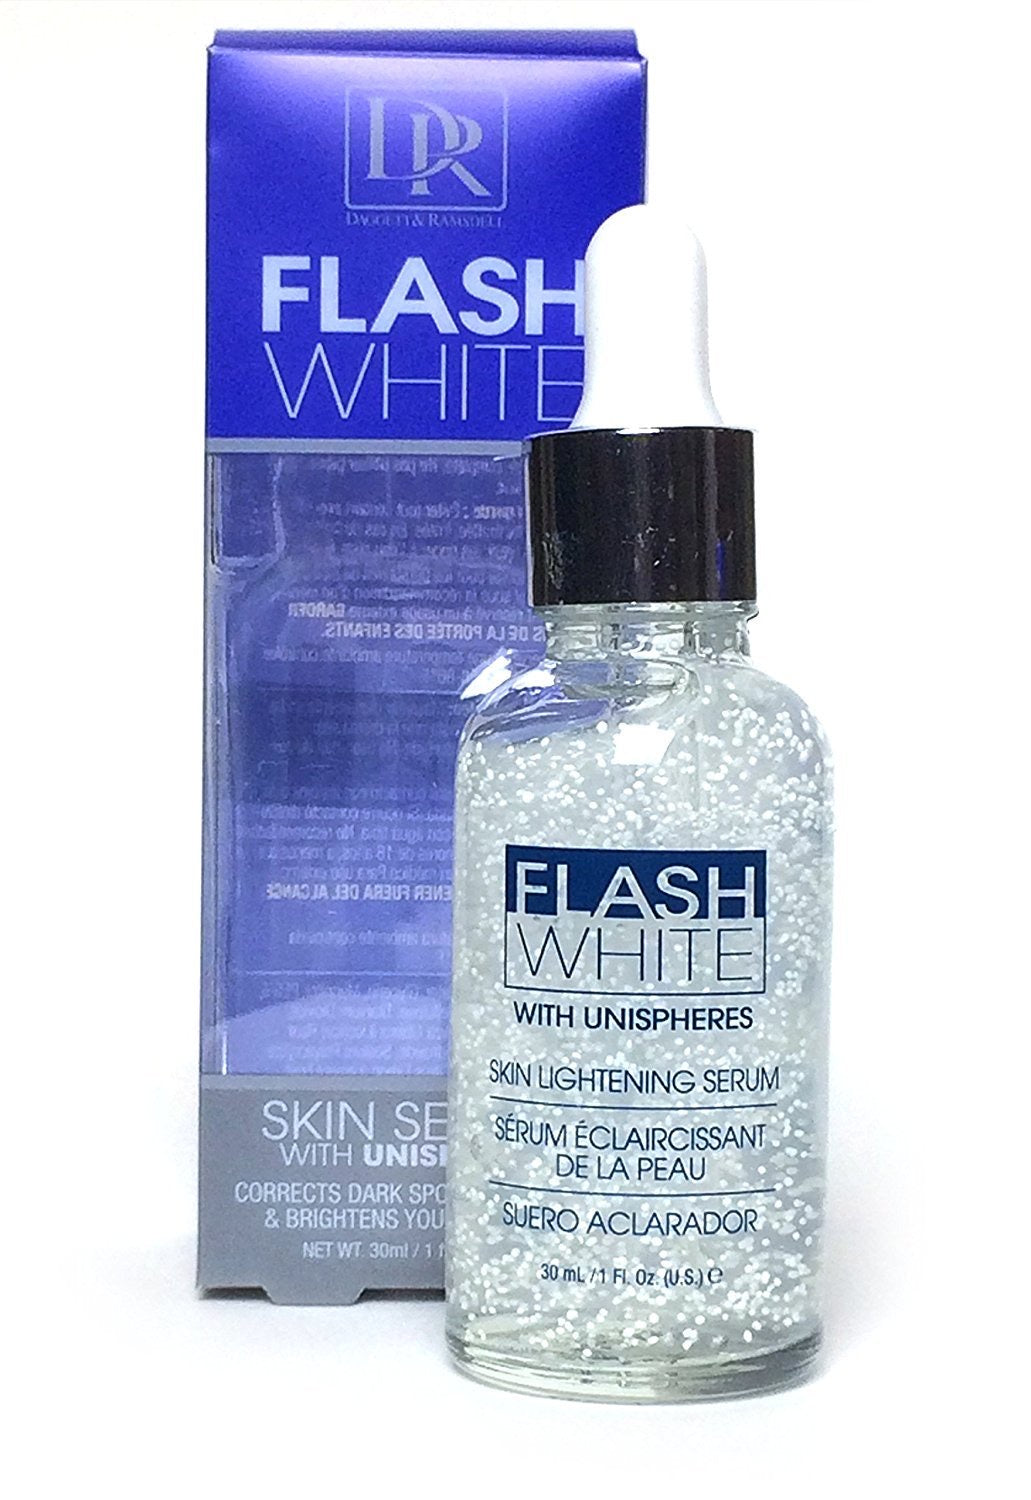 Dr flash white skin lightening serum 30ml